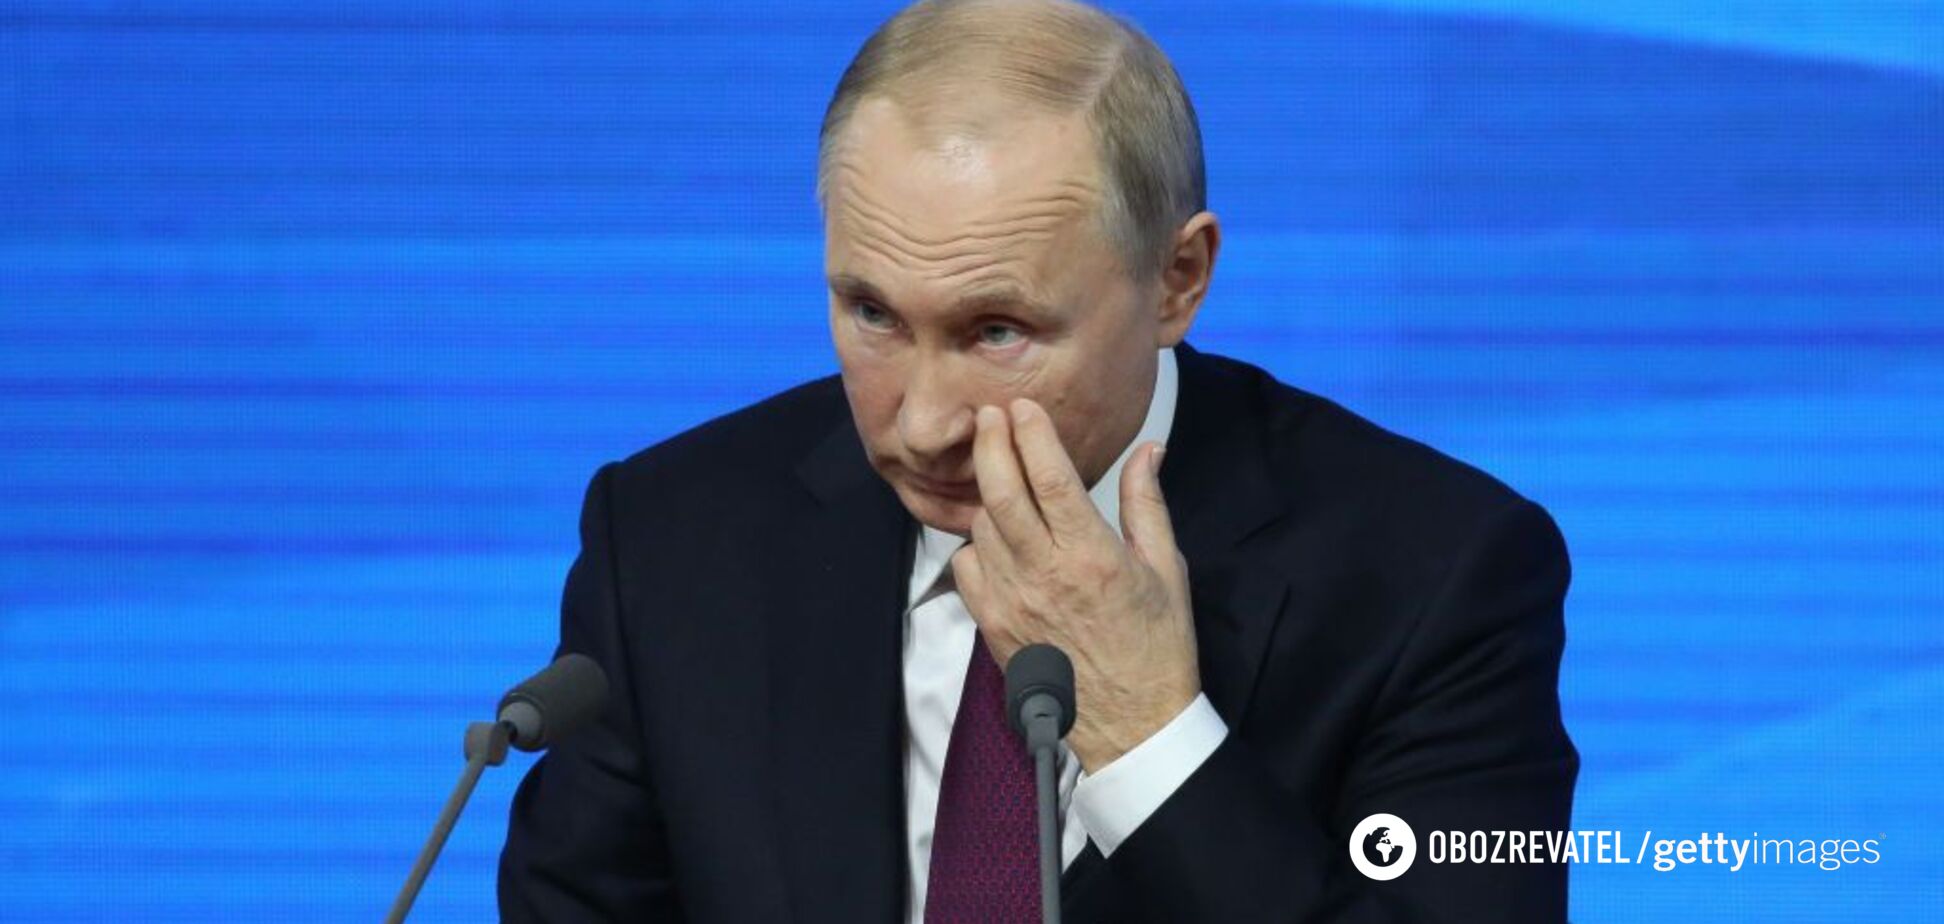 'Цю ганчірку вже вбили!' У США яскраво висміяли ганьбу Путіна: відео